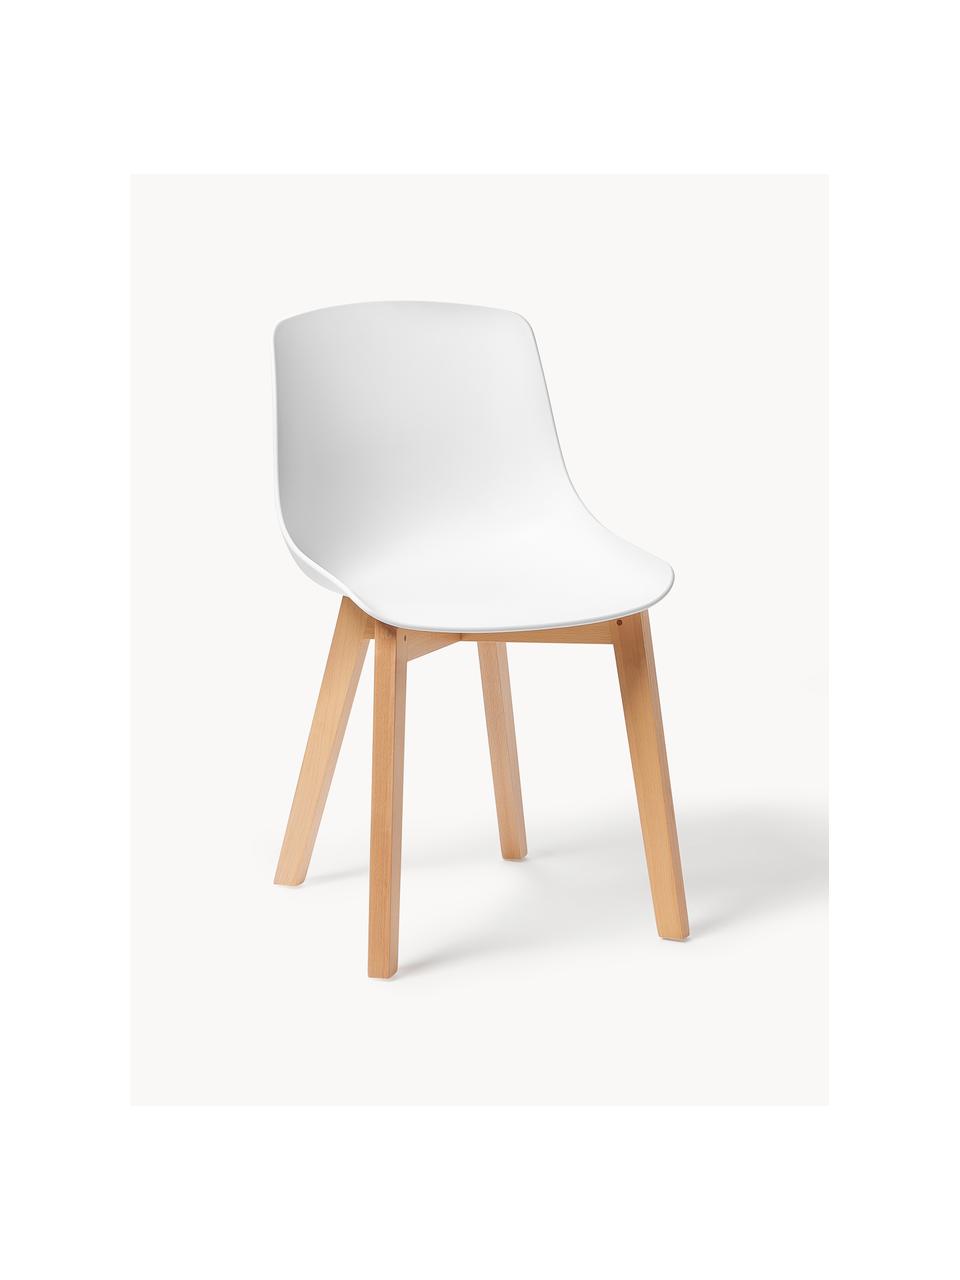 Kunststoffstühle Dave mit Holzbeinen, 2 Stück, Sitzschale: Kunststoff, Beine: Buchenholz, Weiss, Buchenholz, B 46 x T 52 cm